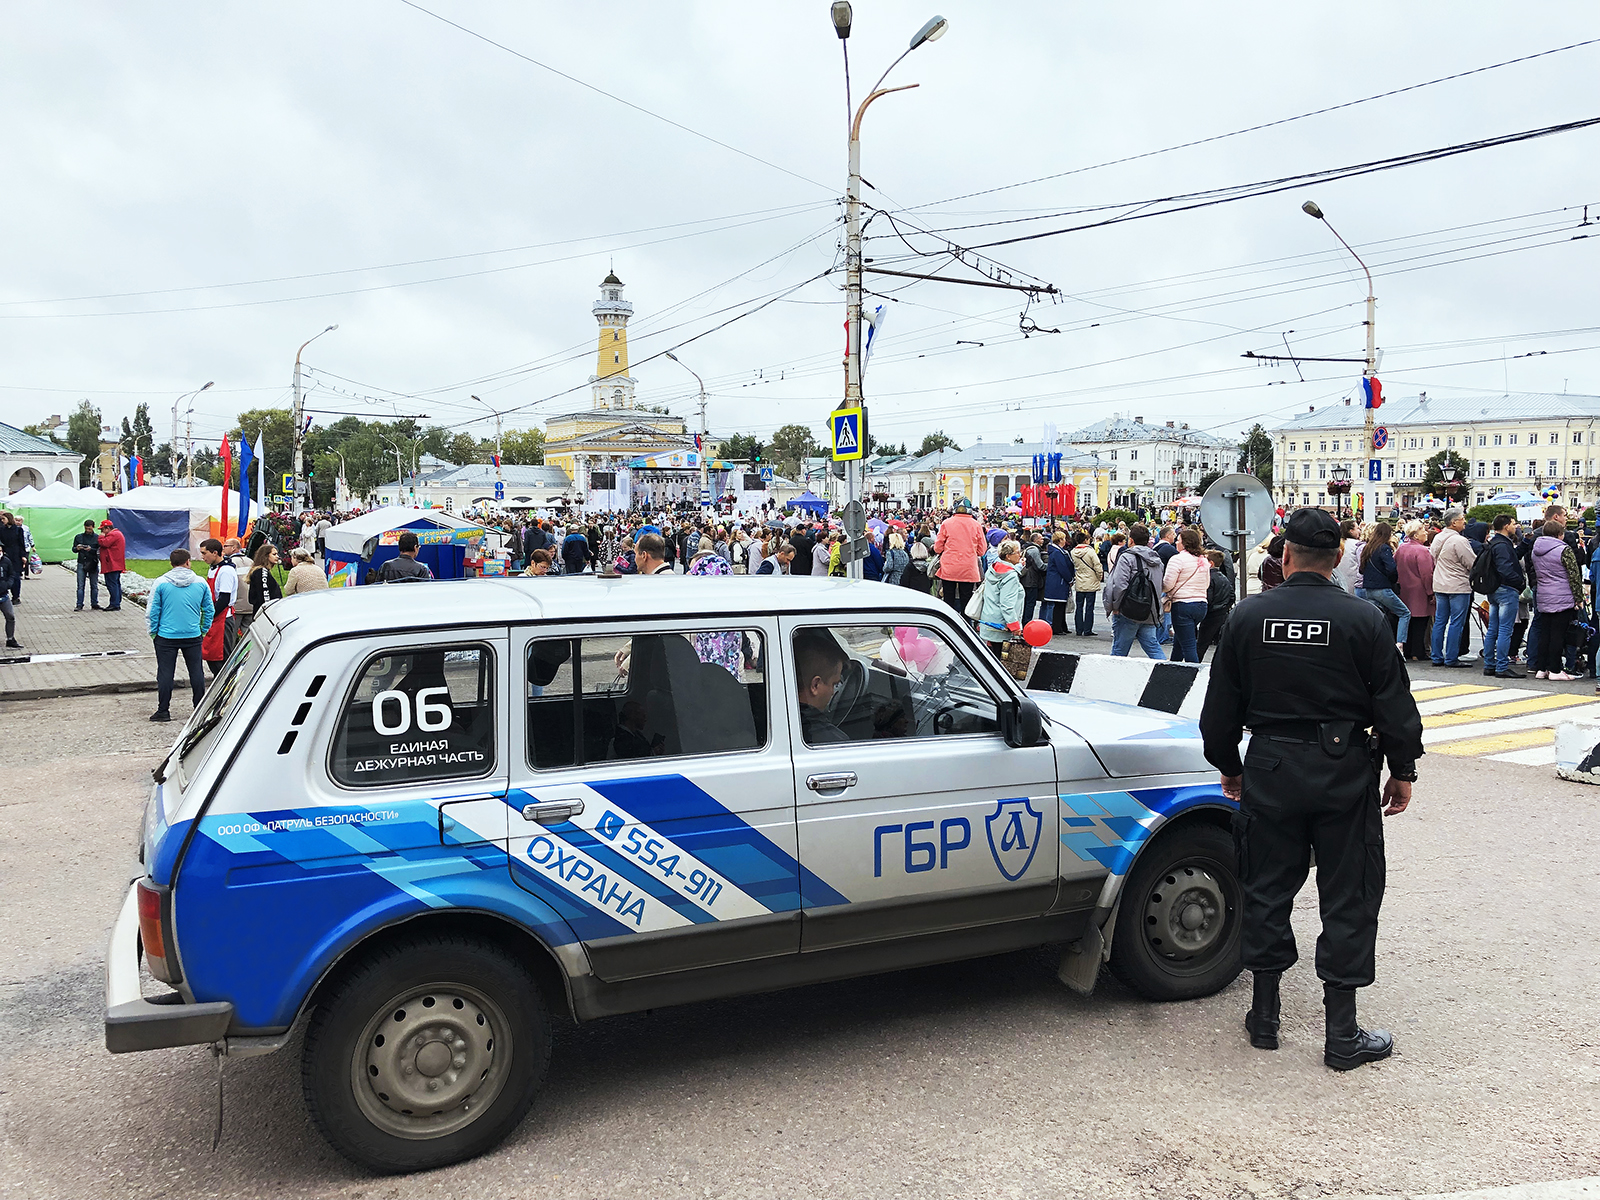 75-летие Костромской области и День города Костромы: ГБР "Патруля Безопасности" обеспечивают правопорядок 